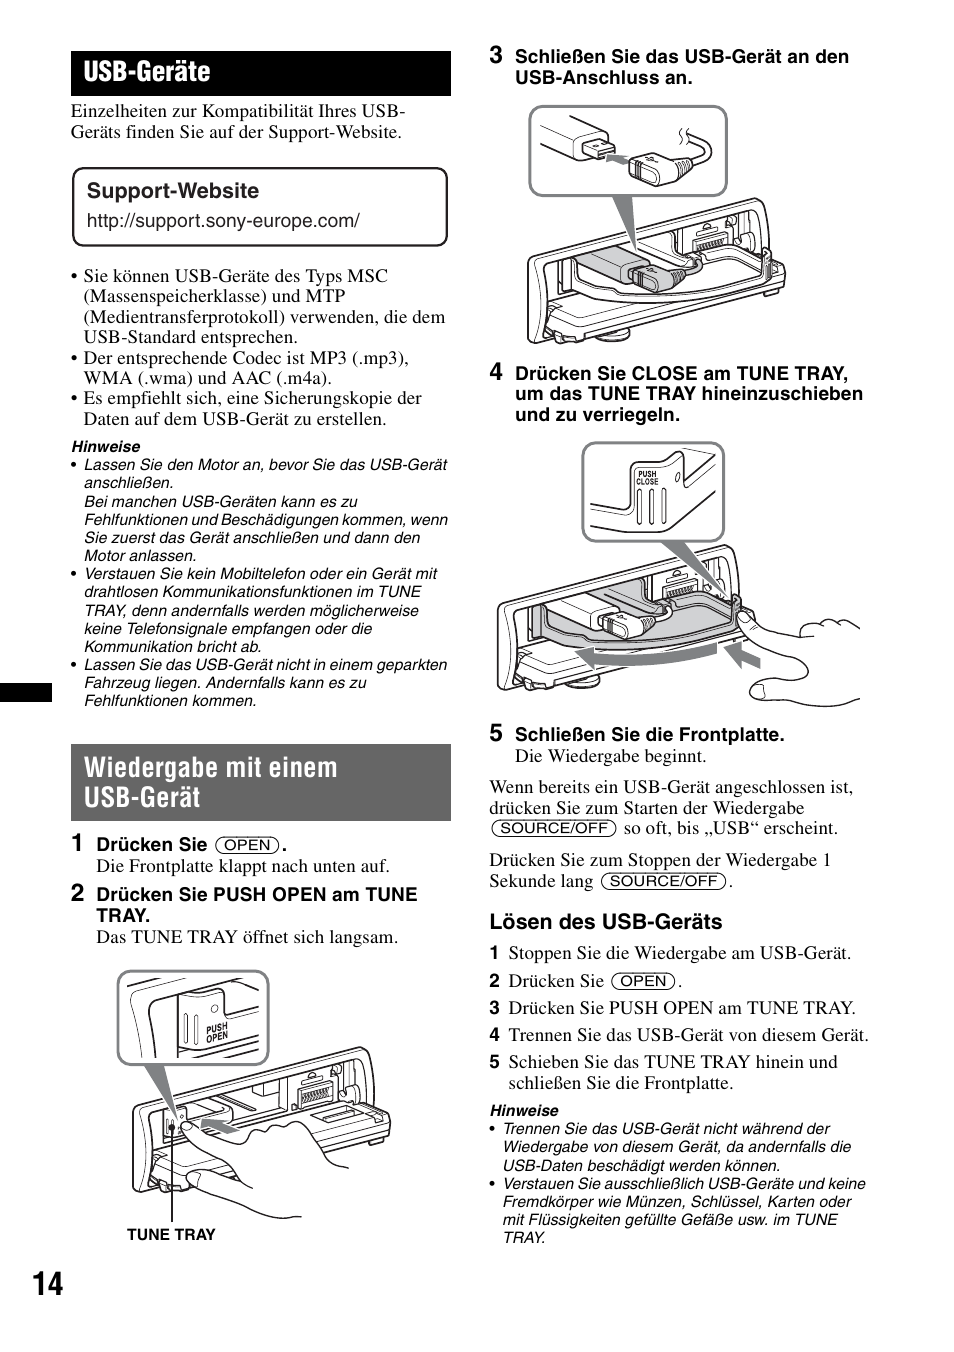 Usb-geräte, Wiedergabe mit einem usb-gerät, Seite 14 | Sony DSX-S100 User Manual | Page 38 / 132